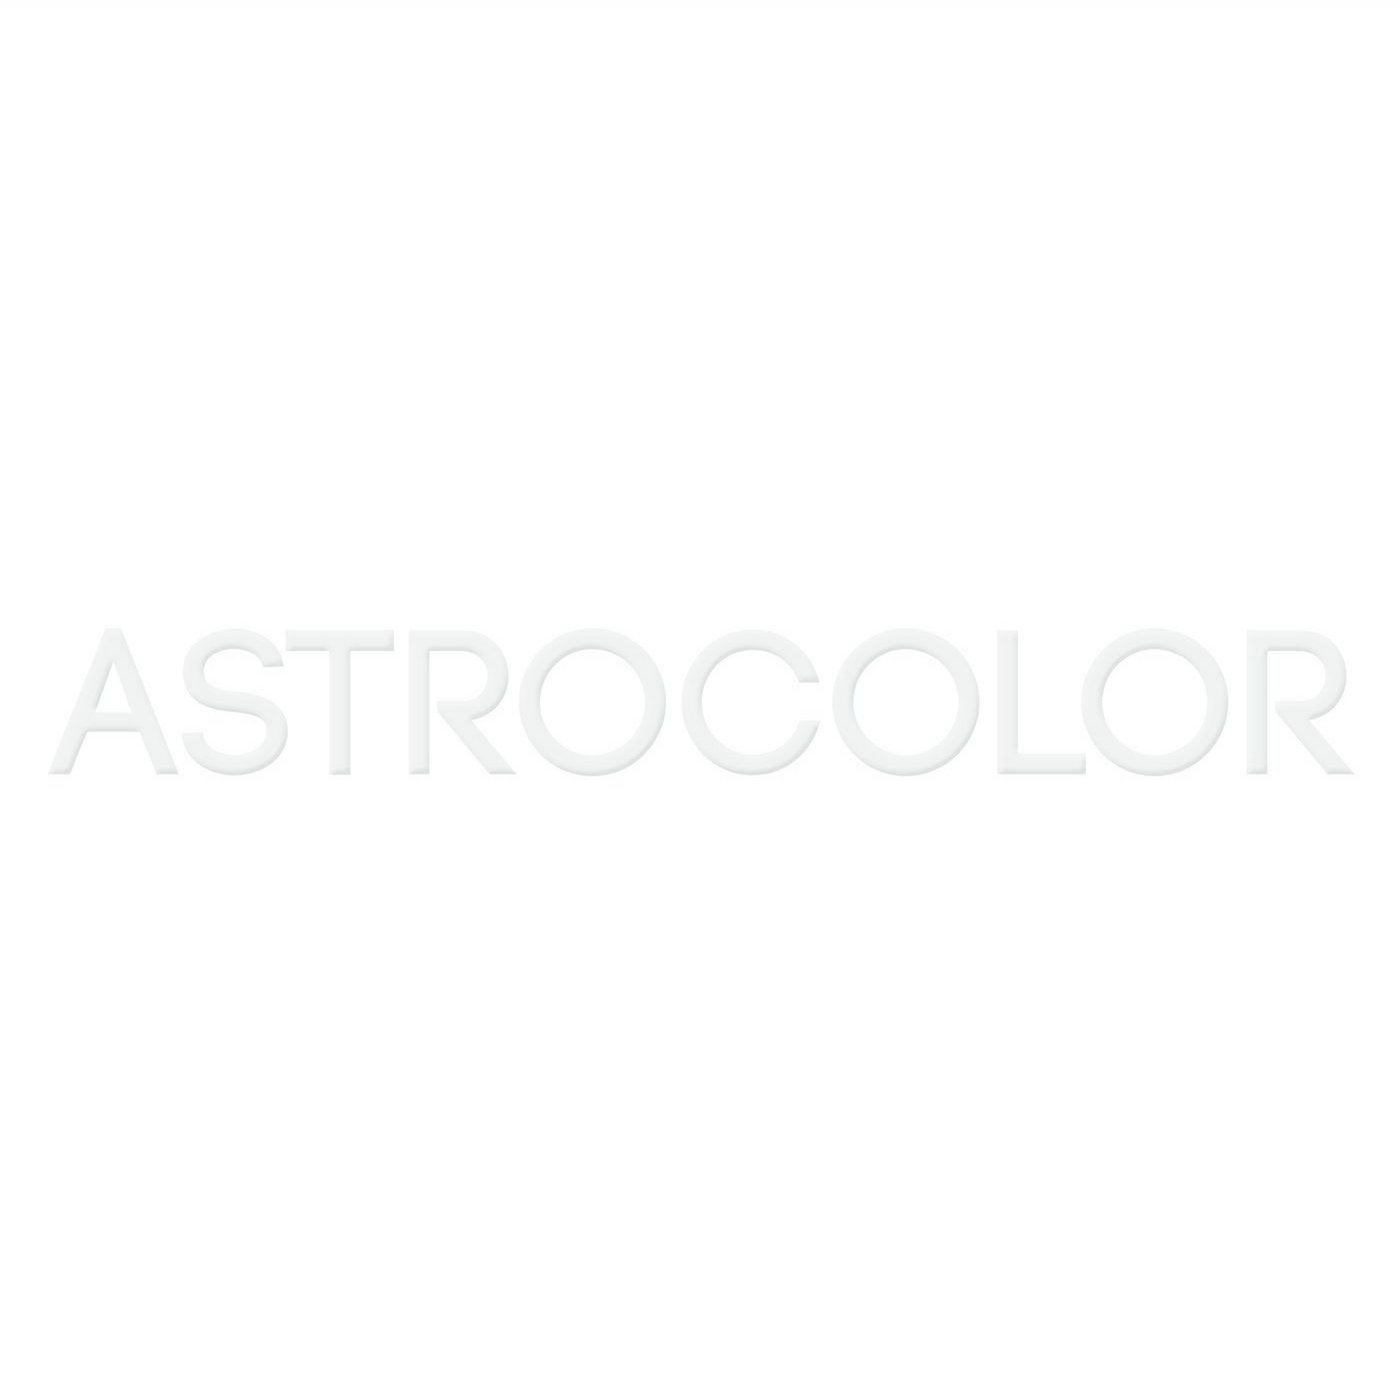 Astrocolor